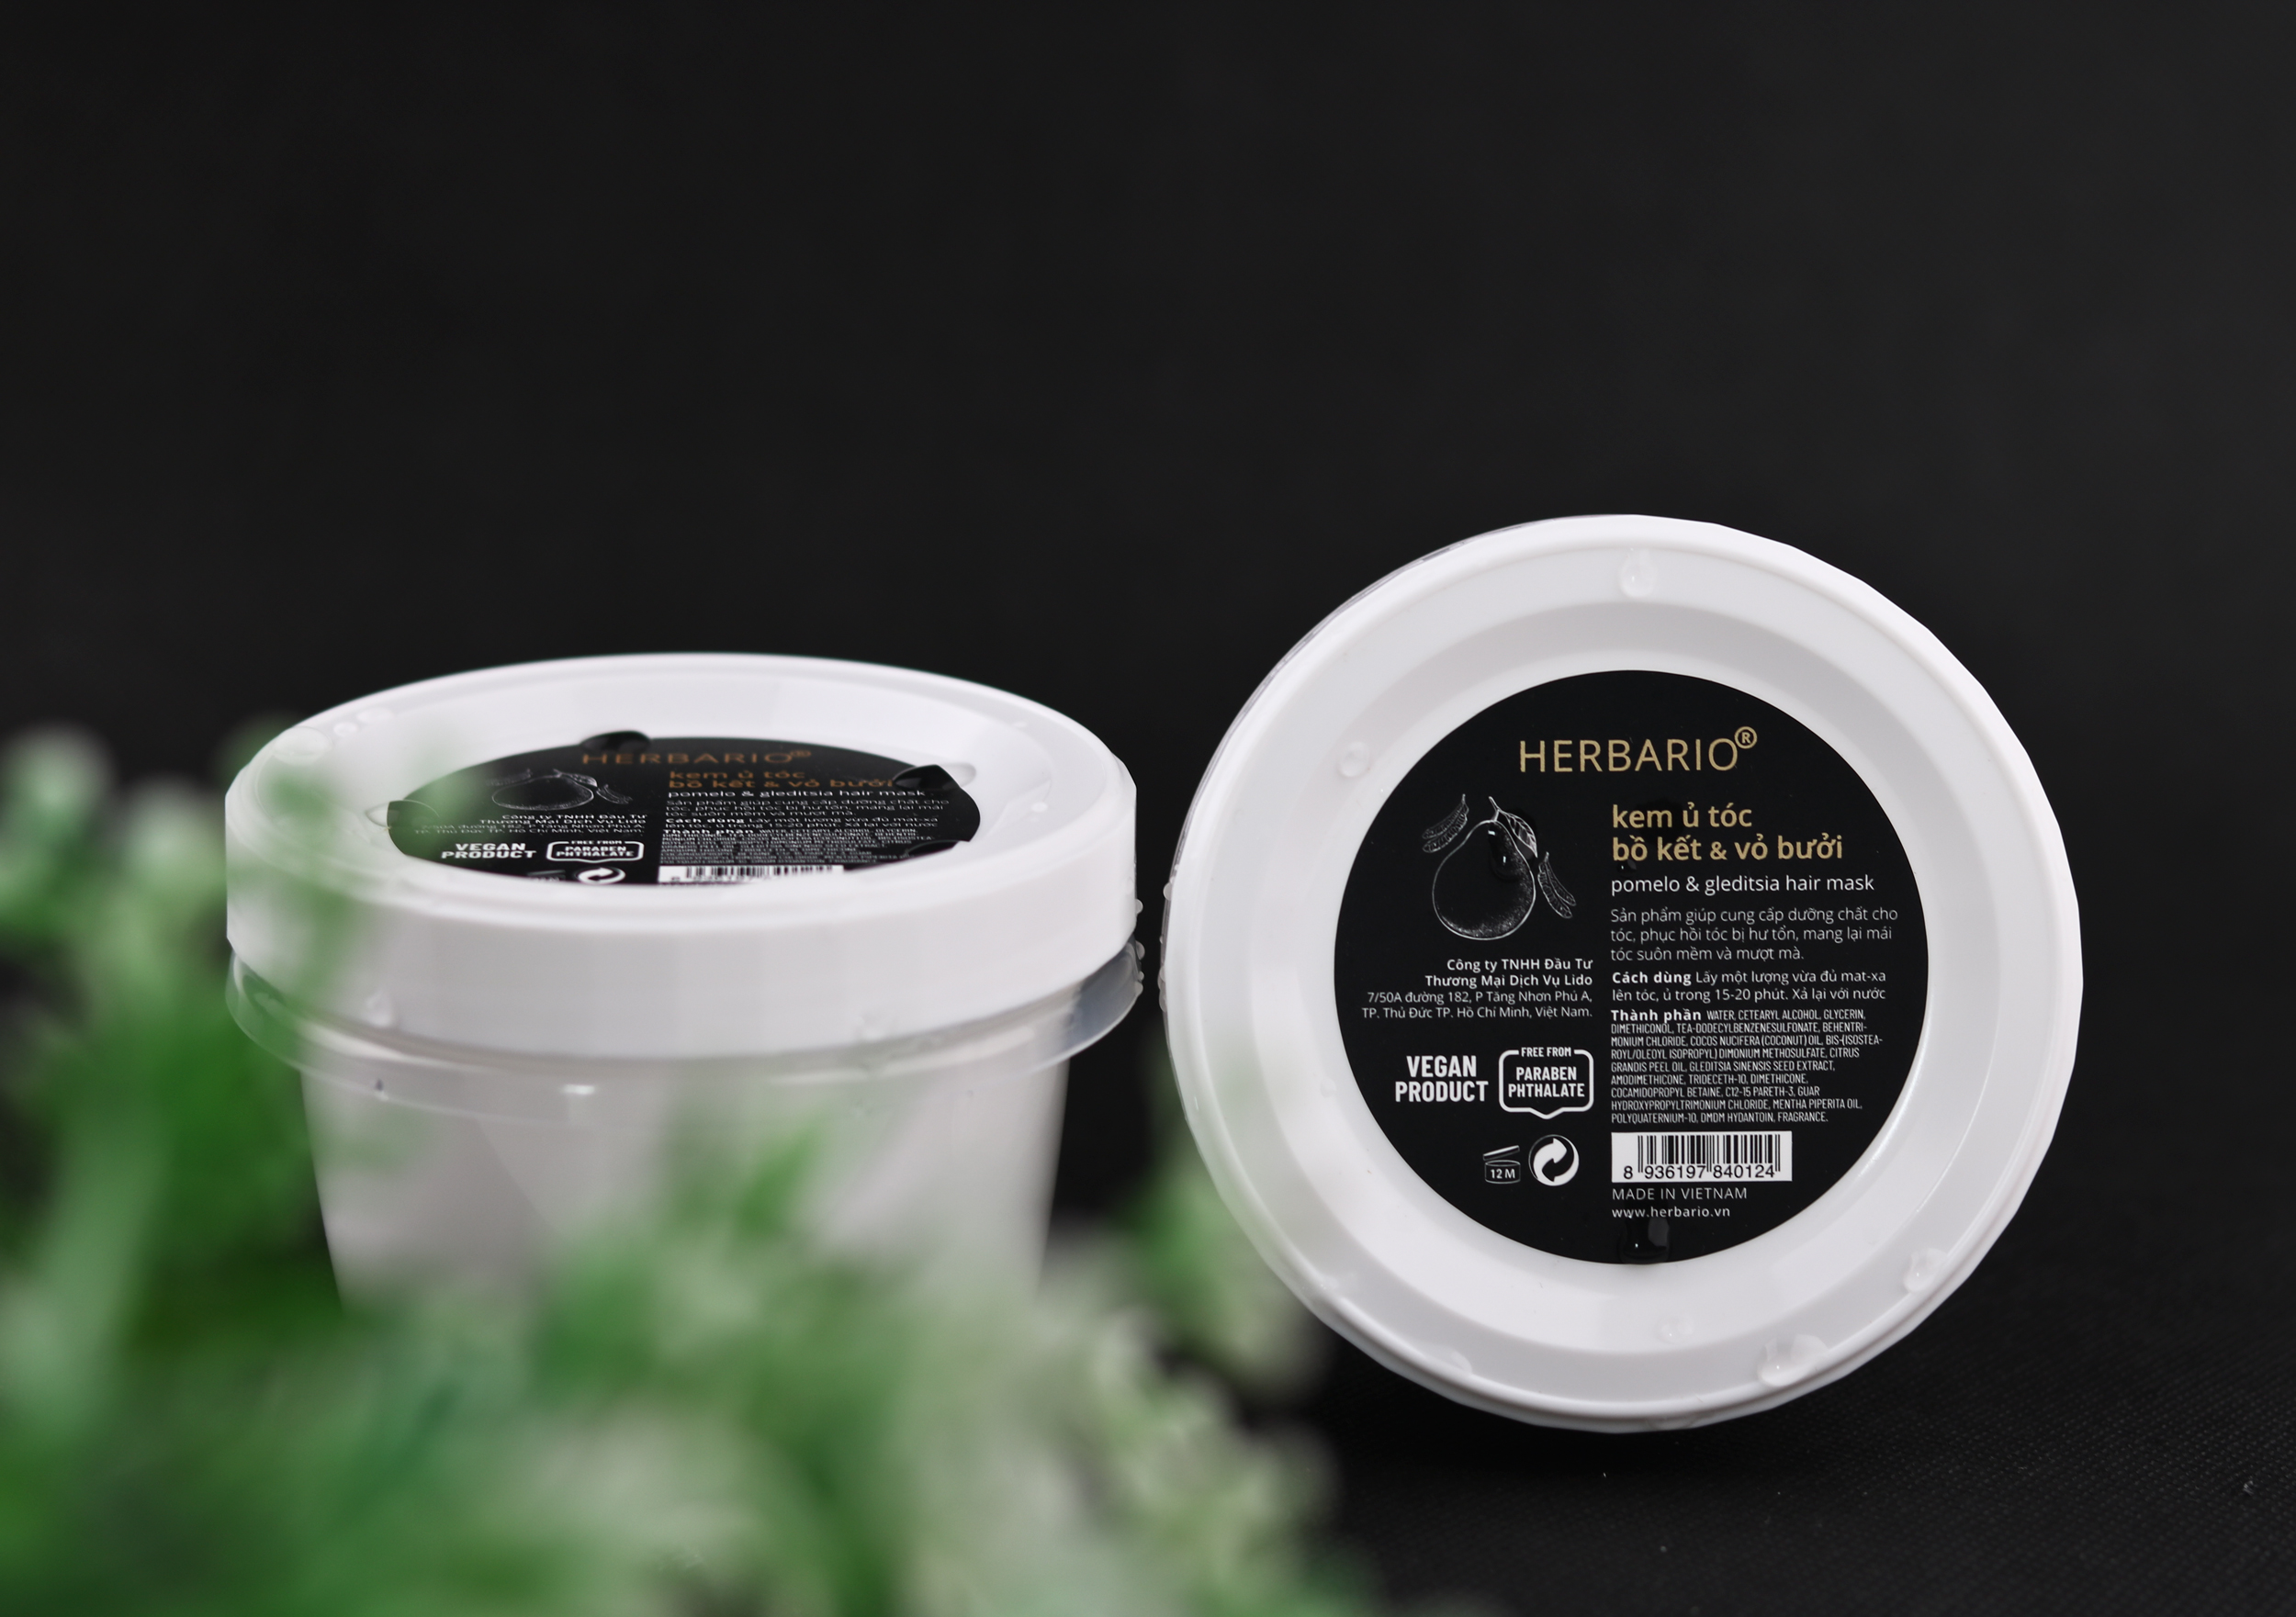 Kem ủ tóc bồ kết và vỏ bưởi Herbario 200ml dưỡng tóc chắc khỏe đen bóng suôn mượt thuần chay